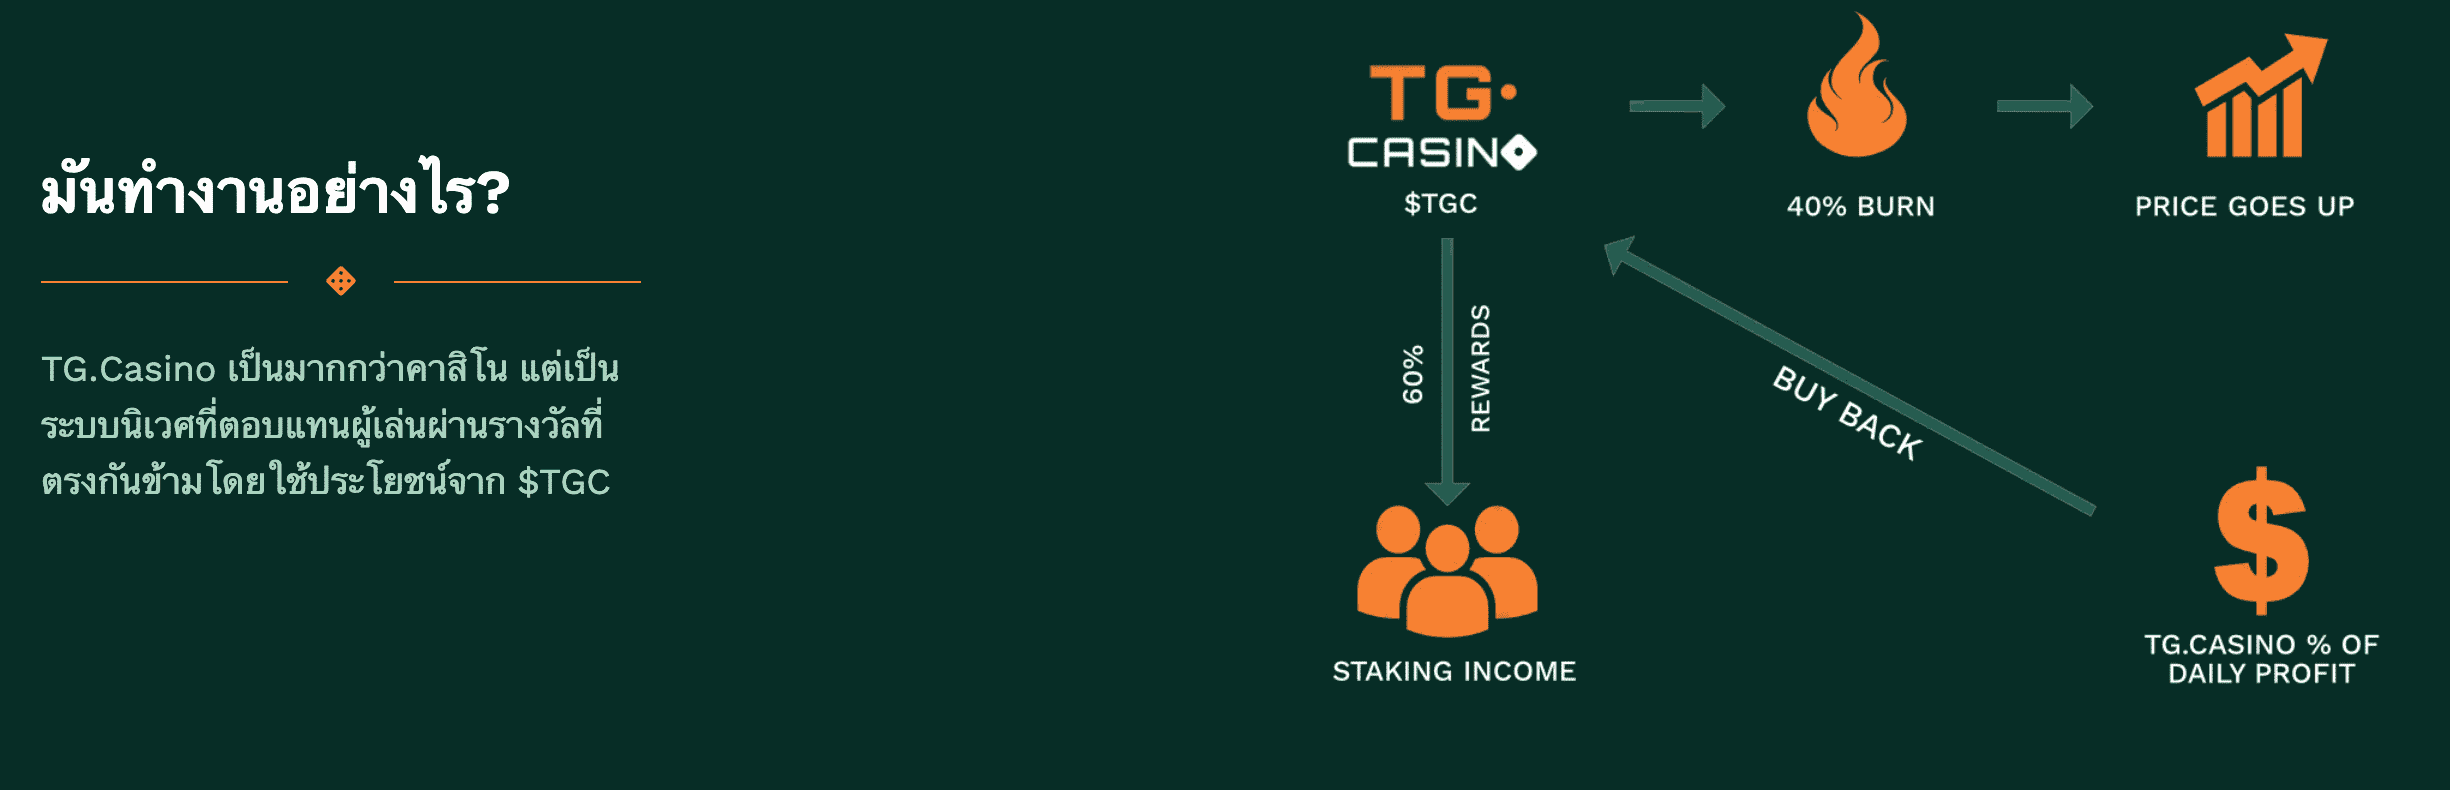 TG.Casino เหรียญน่าลงทุน วันนี้